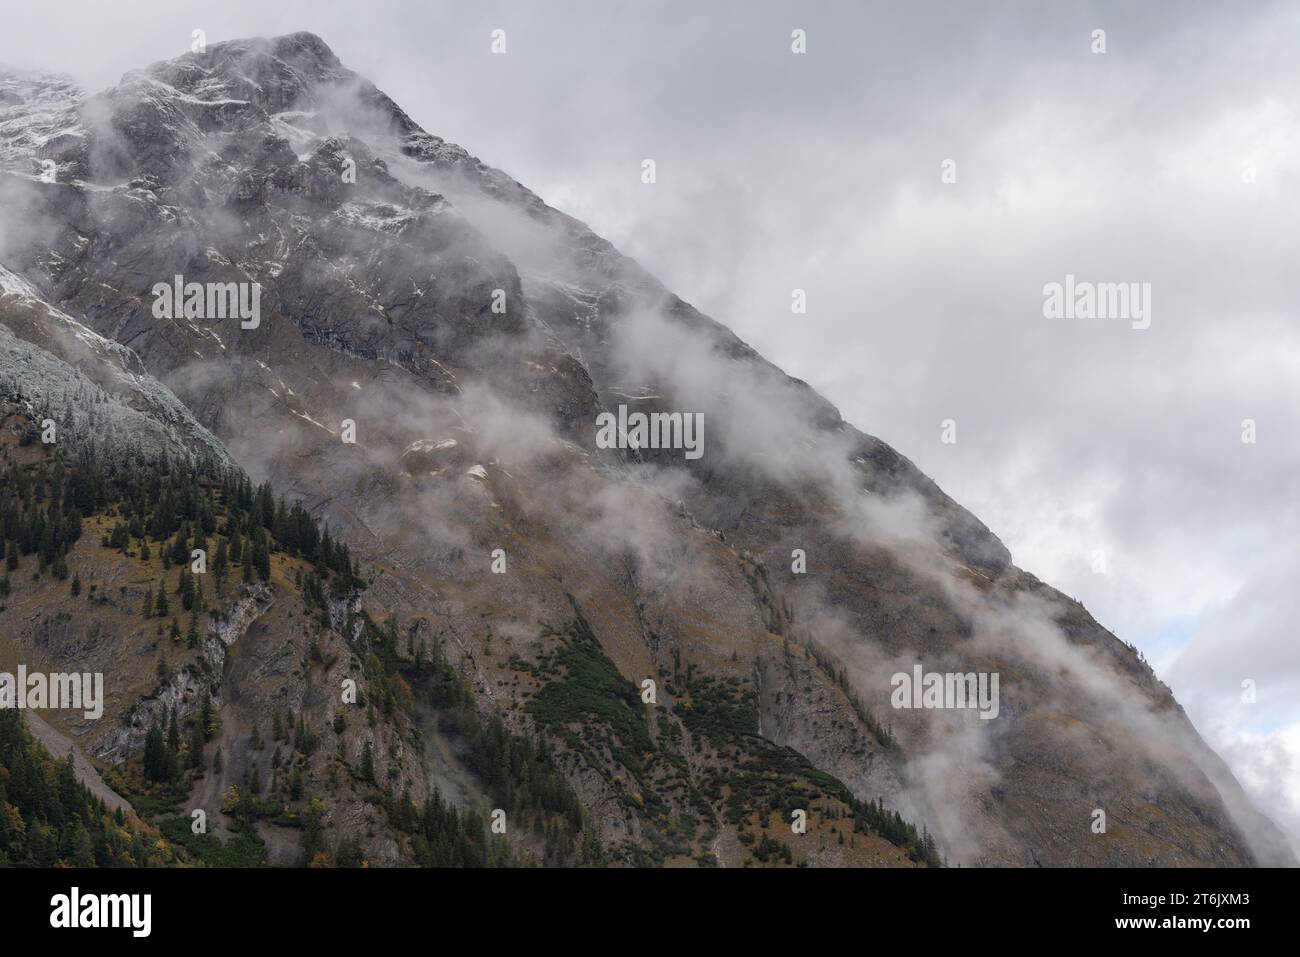 Ein kalter und nebeliger Herbsttag im Engtal oder Engtal, Naturschutzgebiet Karwendel, Karwendelgebirge, Tirol, Österreich, Europa Stockfoto